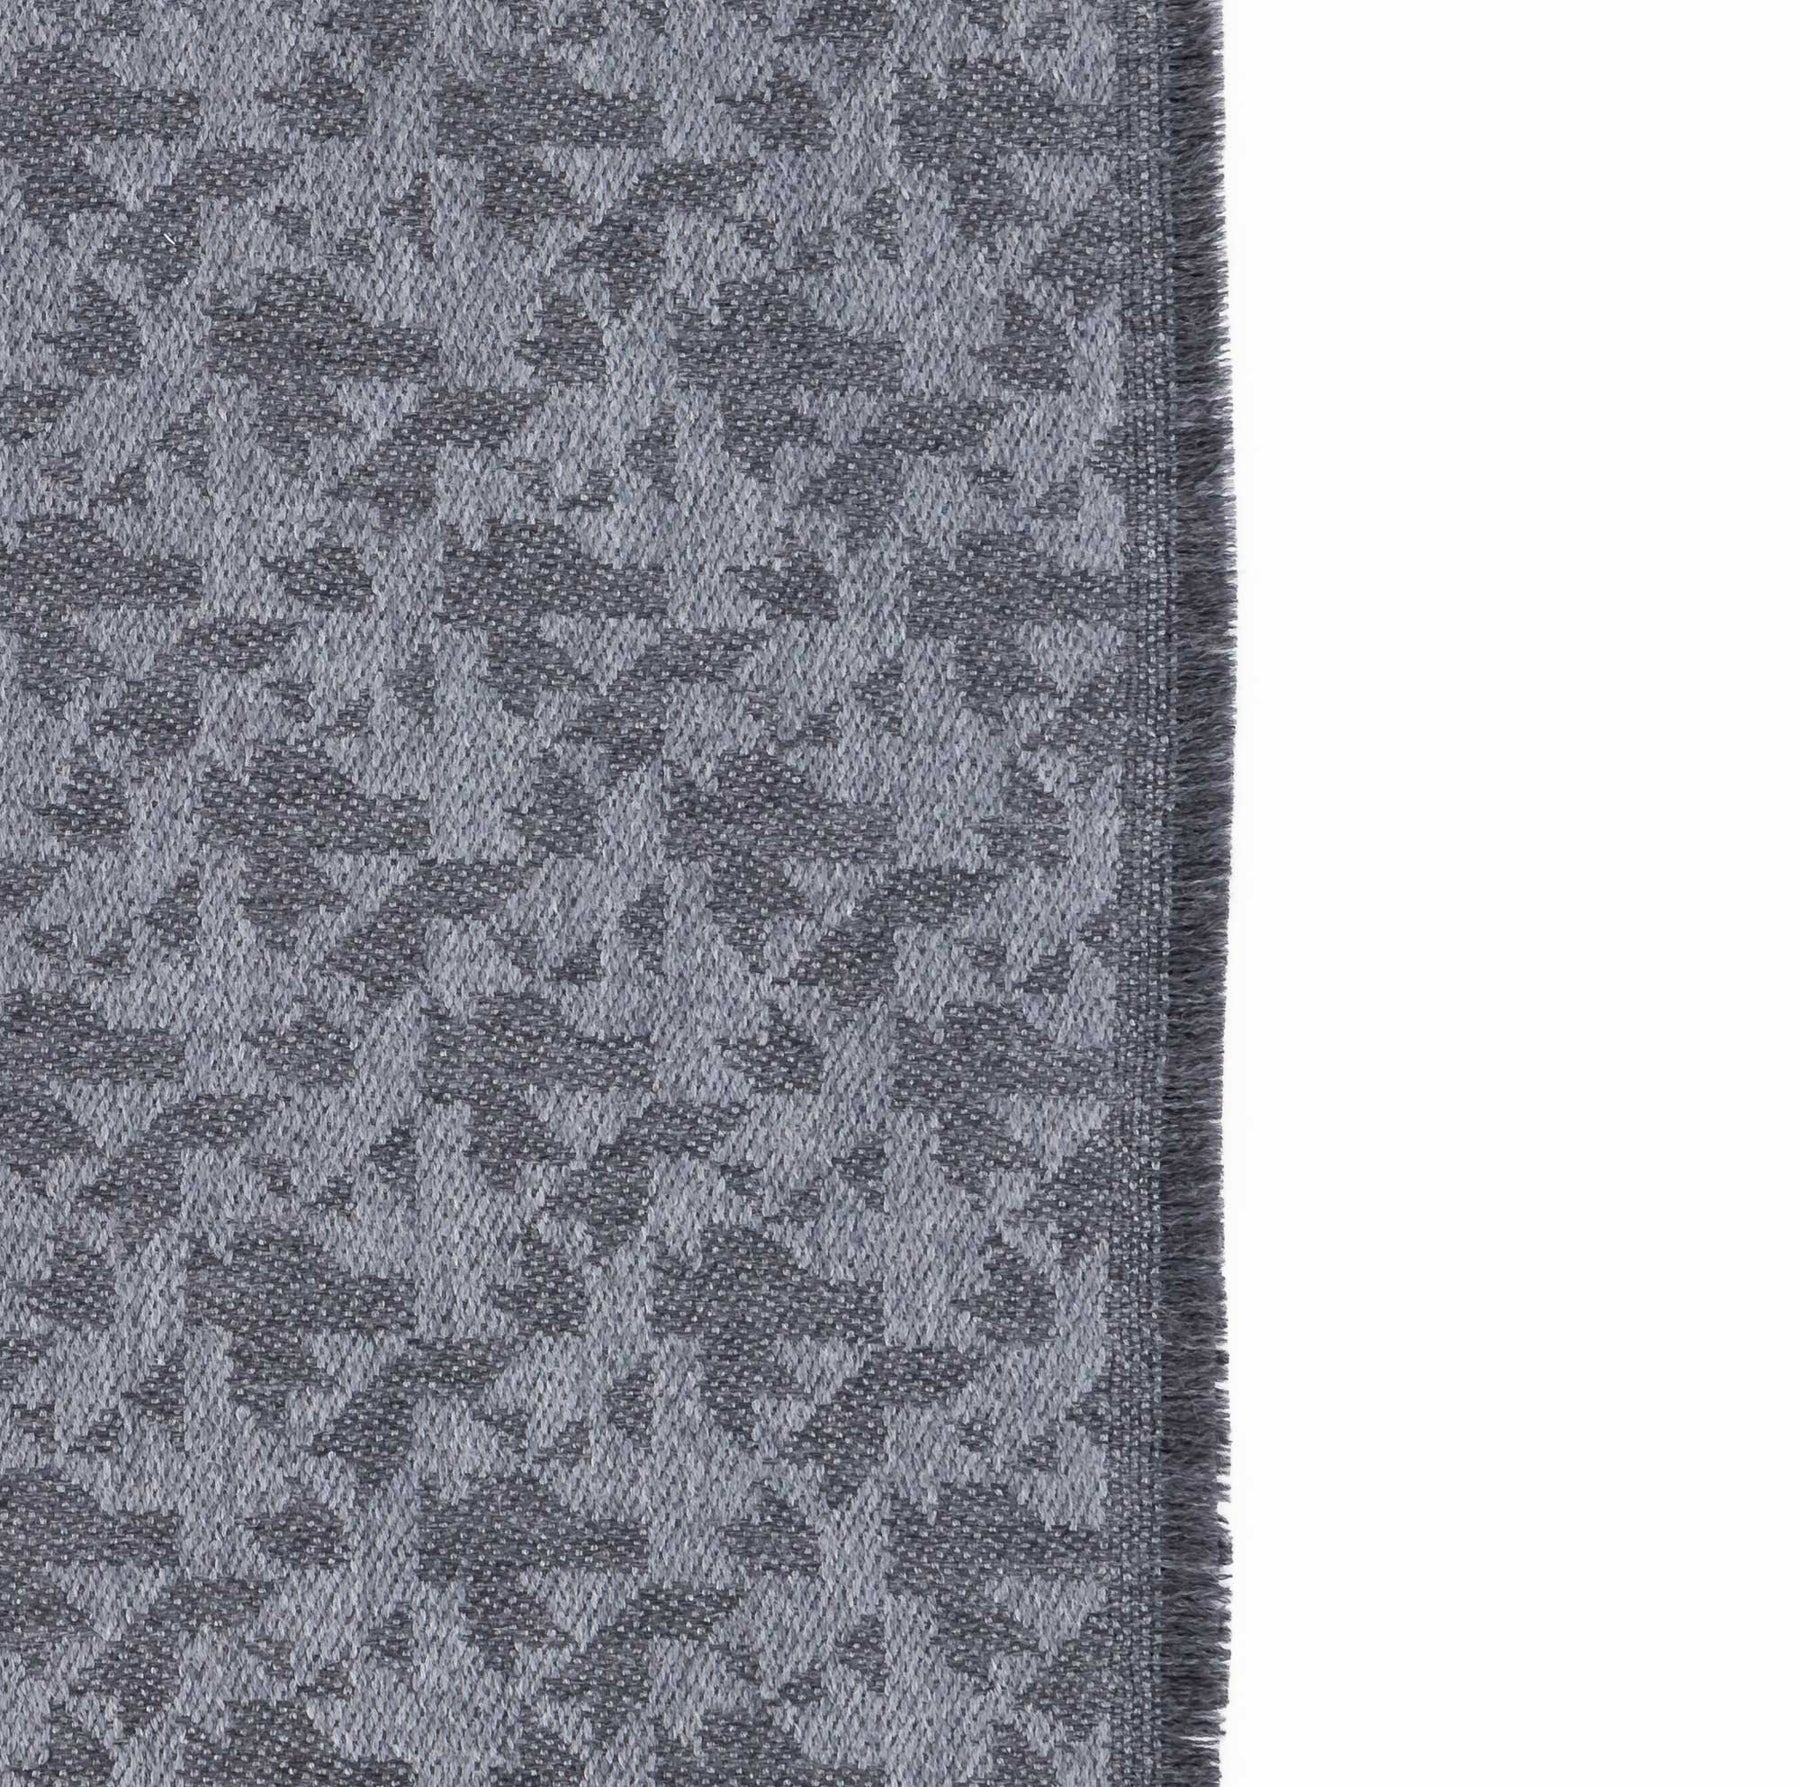 LANVIN | Sciarpa lana grigio | 683363